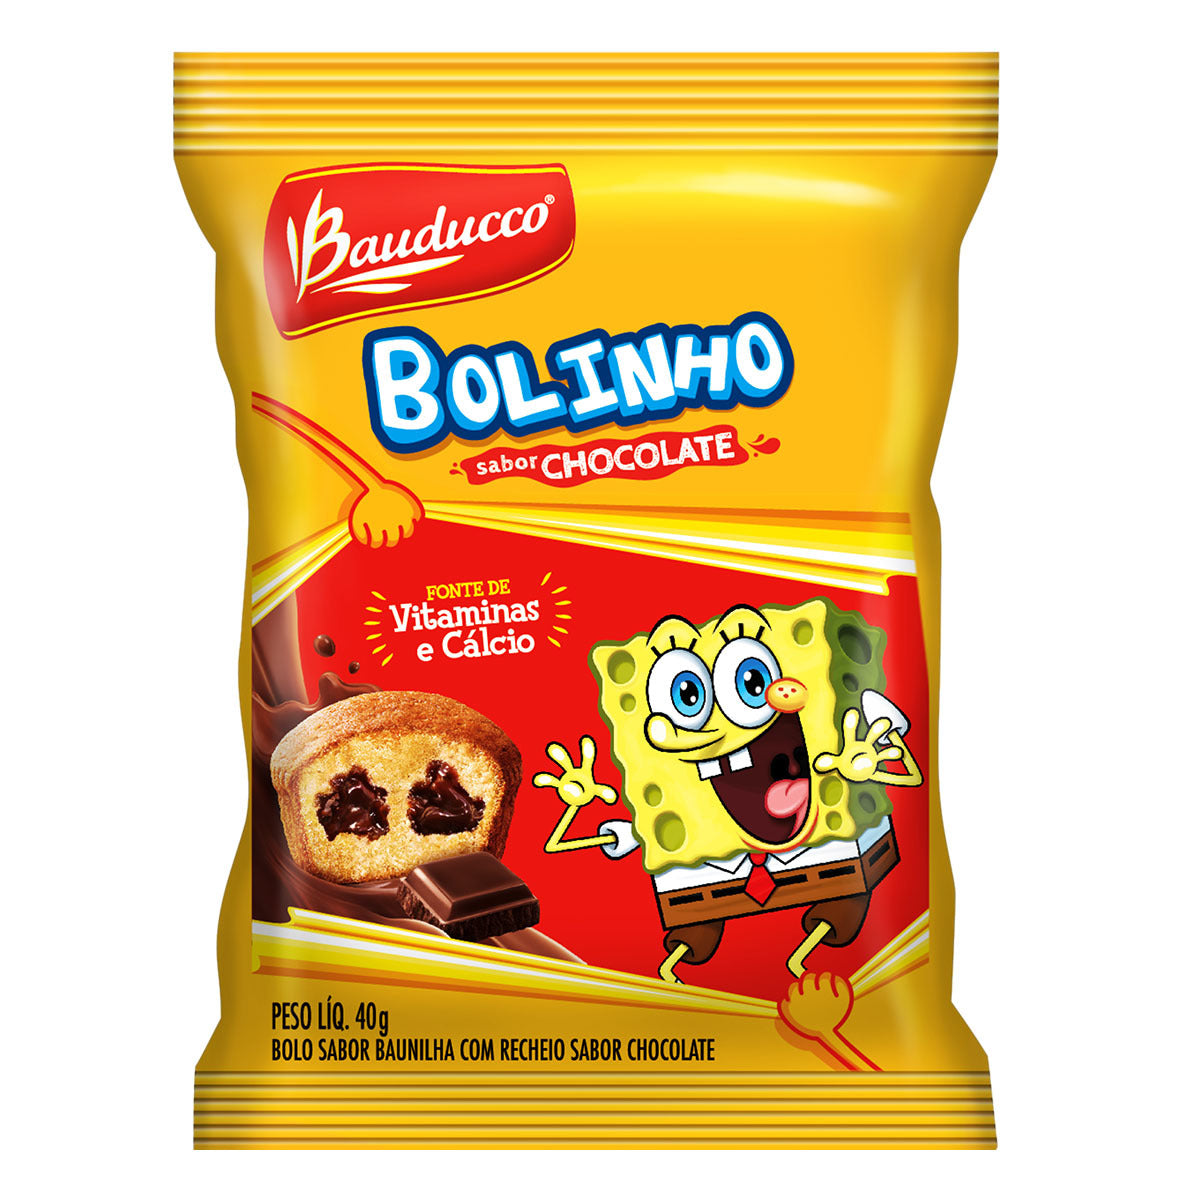 BOLO BAUDUCCO BAUNILHA CHOCOLATE 40g – Mercado Serve Bem